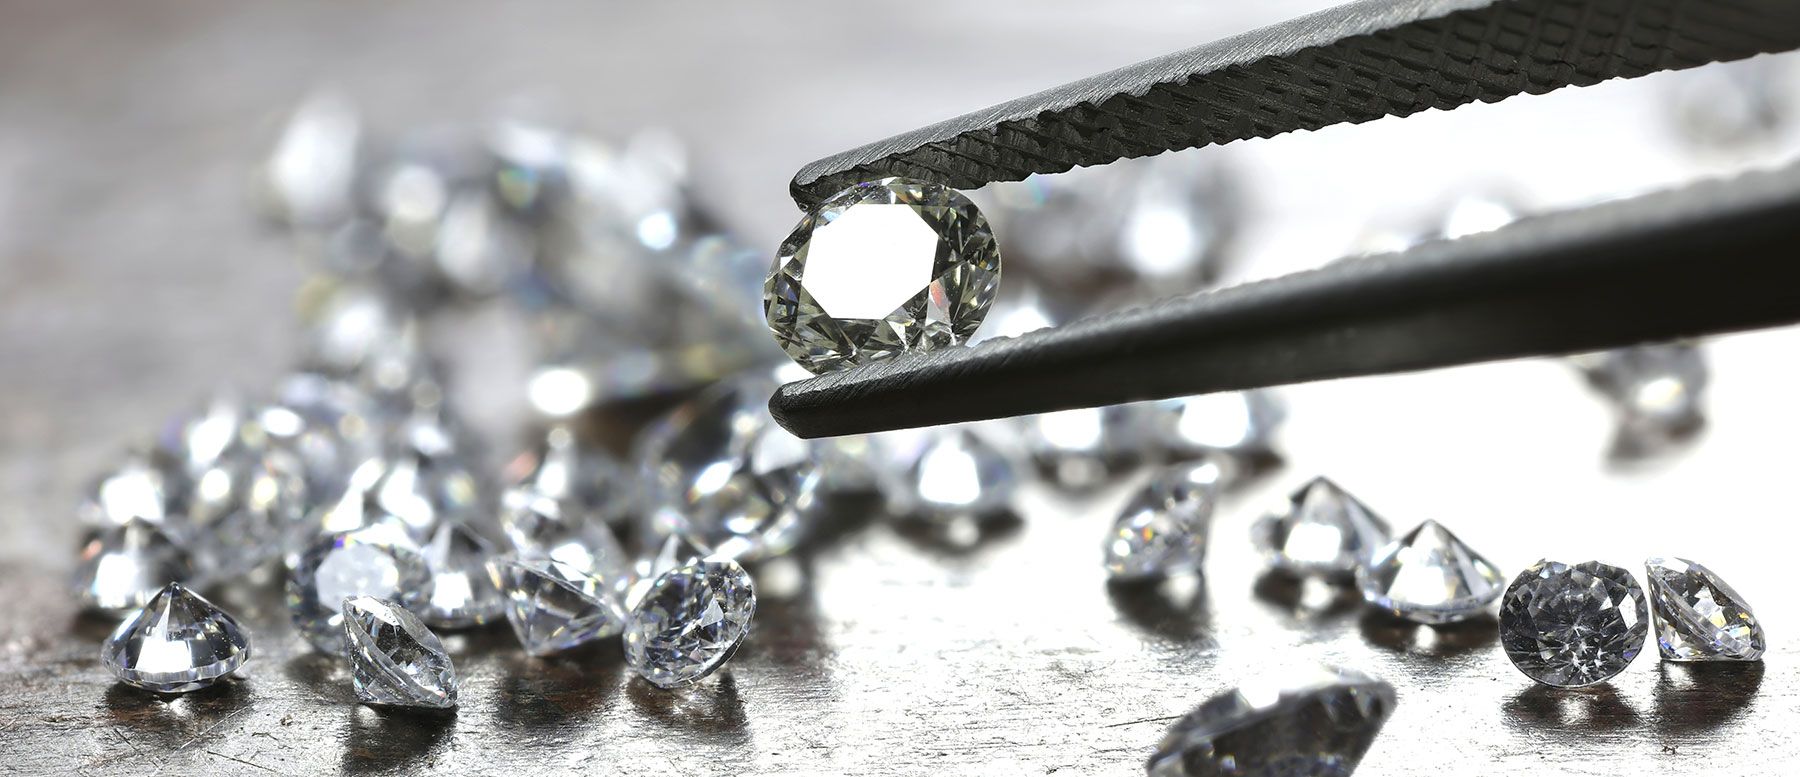 Classifica e costo dei diamanti più cari al mondo